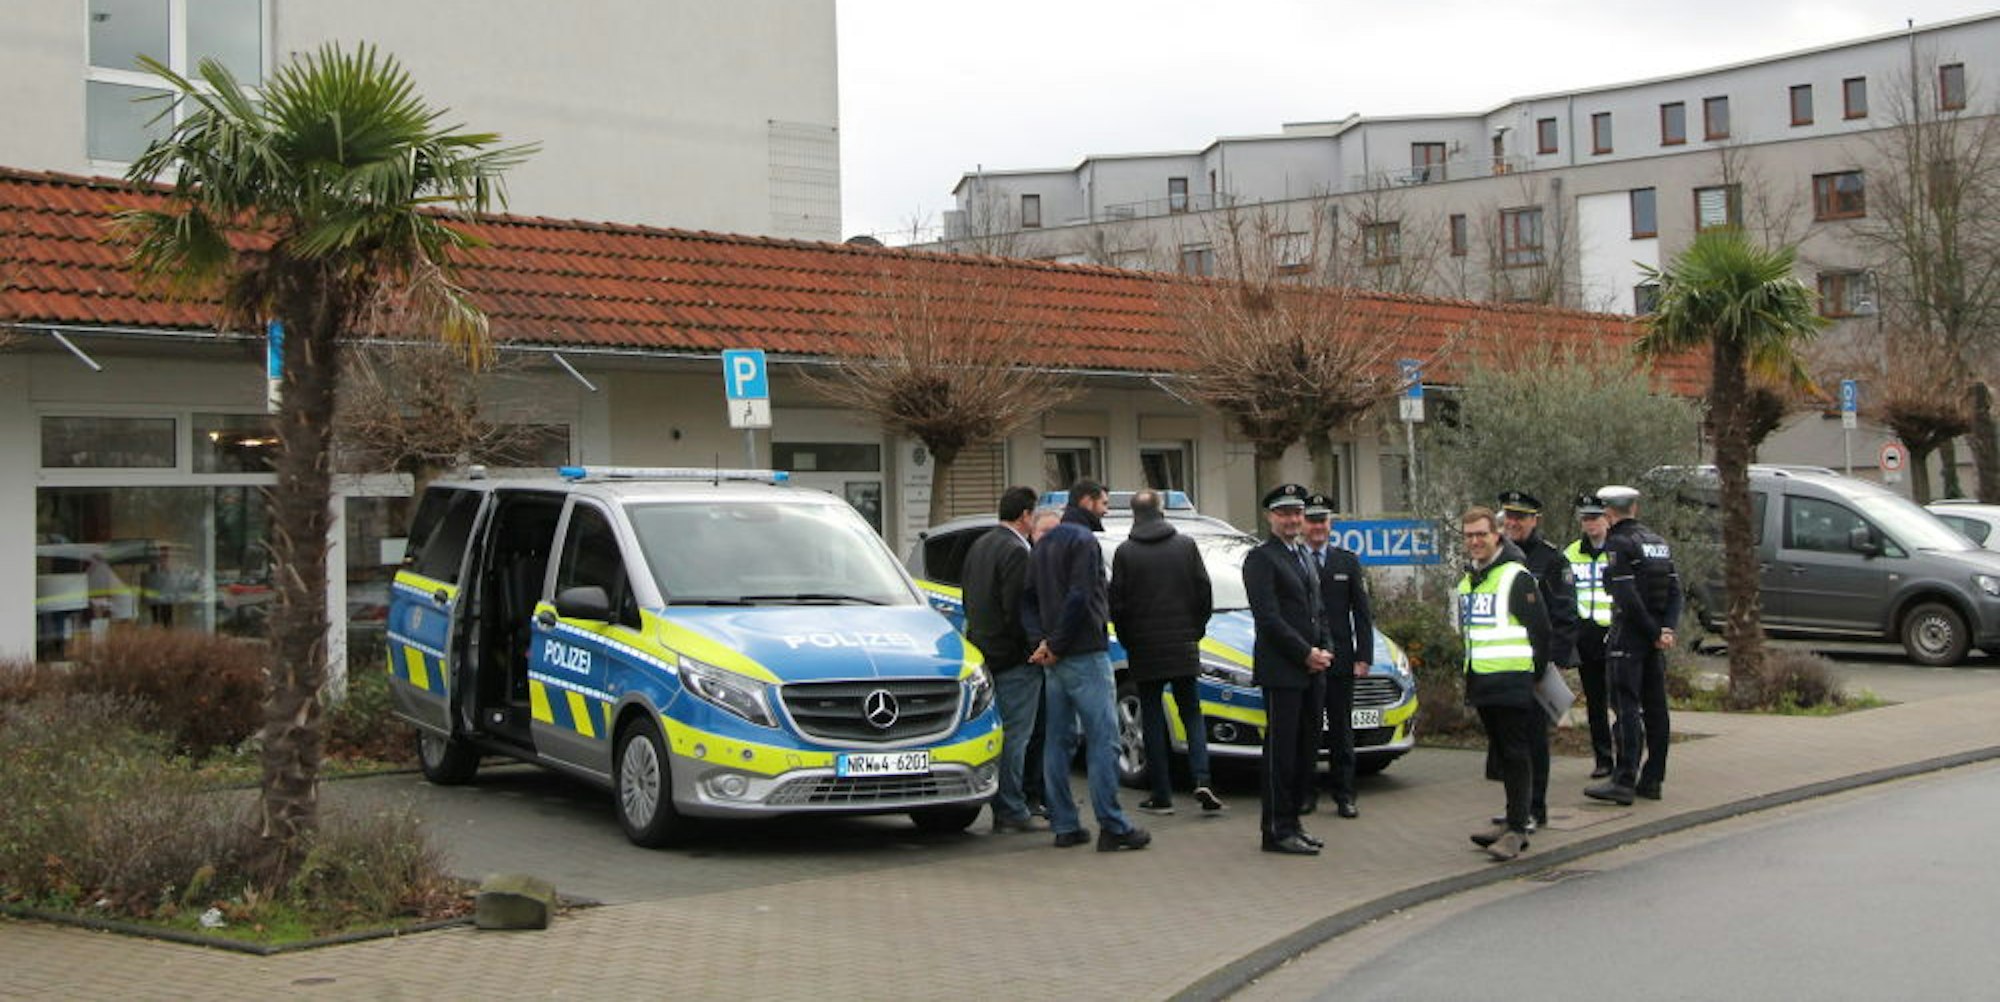 Vor der Wache in Hürth waren die neuen Einsatzwagen der Polizei am Montagmittag geparkt.